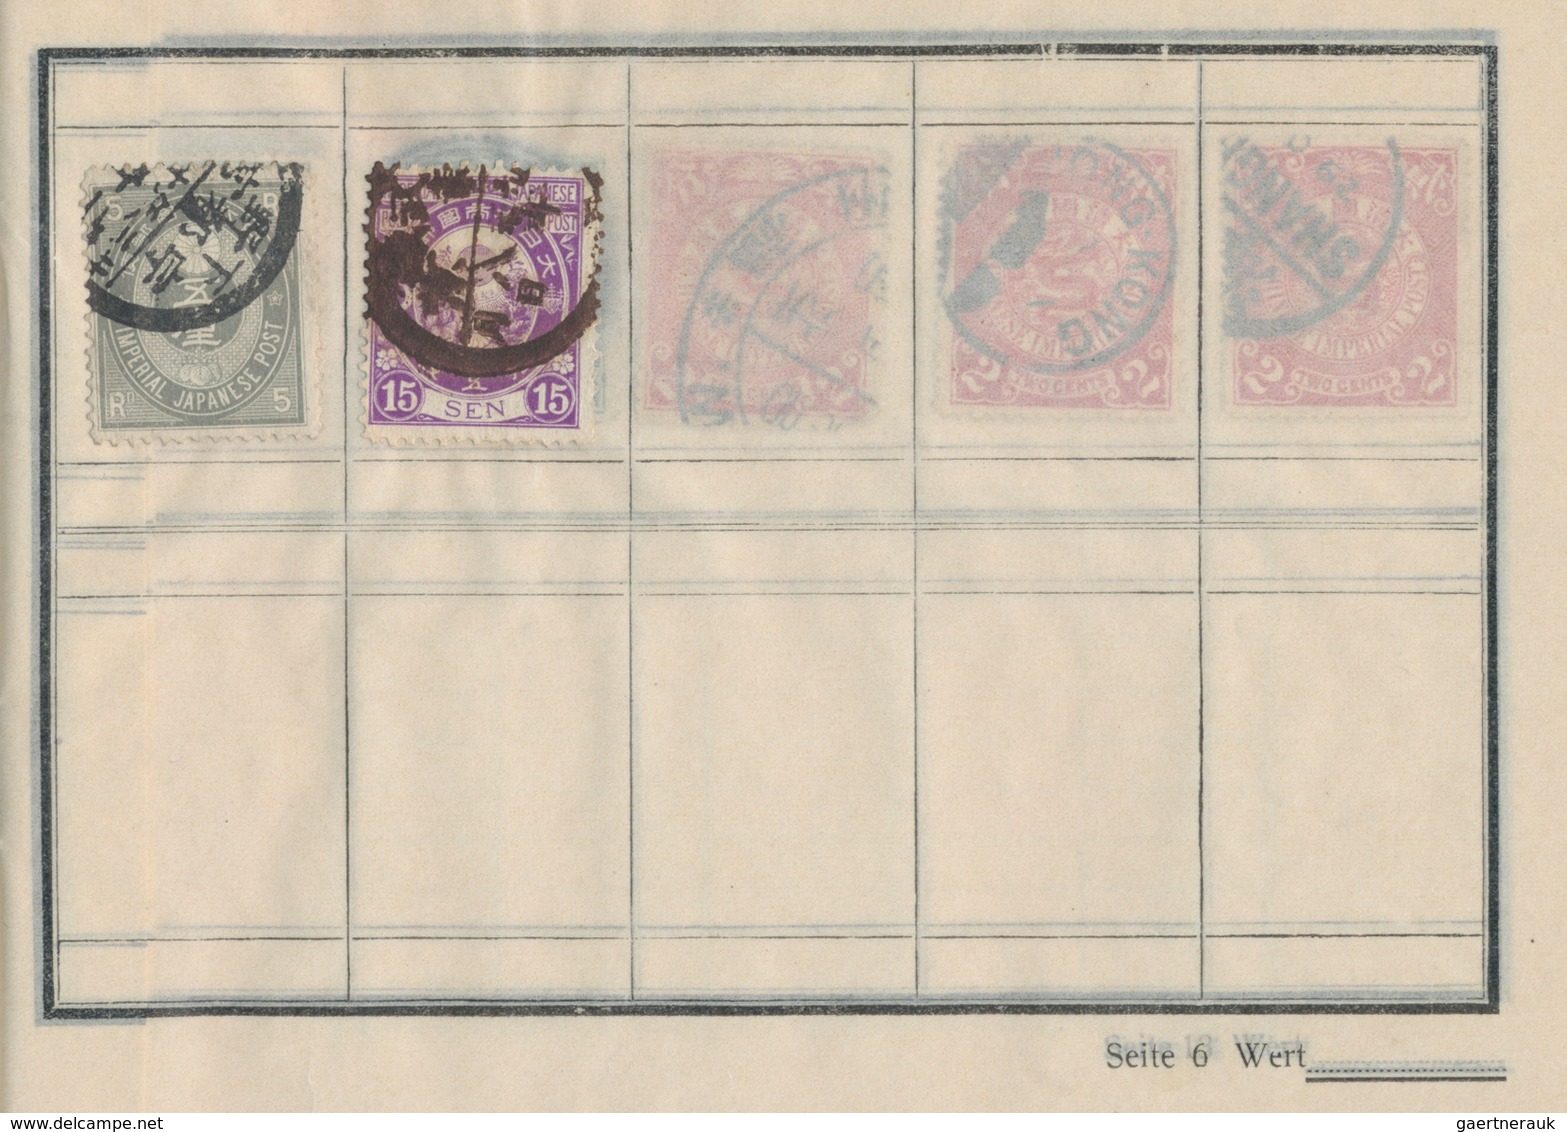 China - Volksrepublik: 1958/65, card addressed to Hamburg, bearing Stage Art of Mei Lan-fang (C94) 1